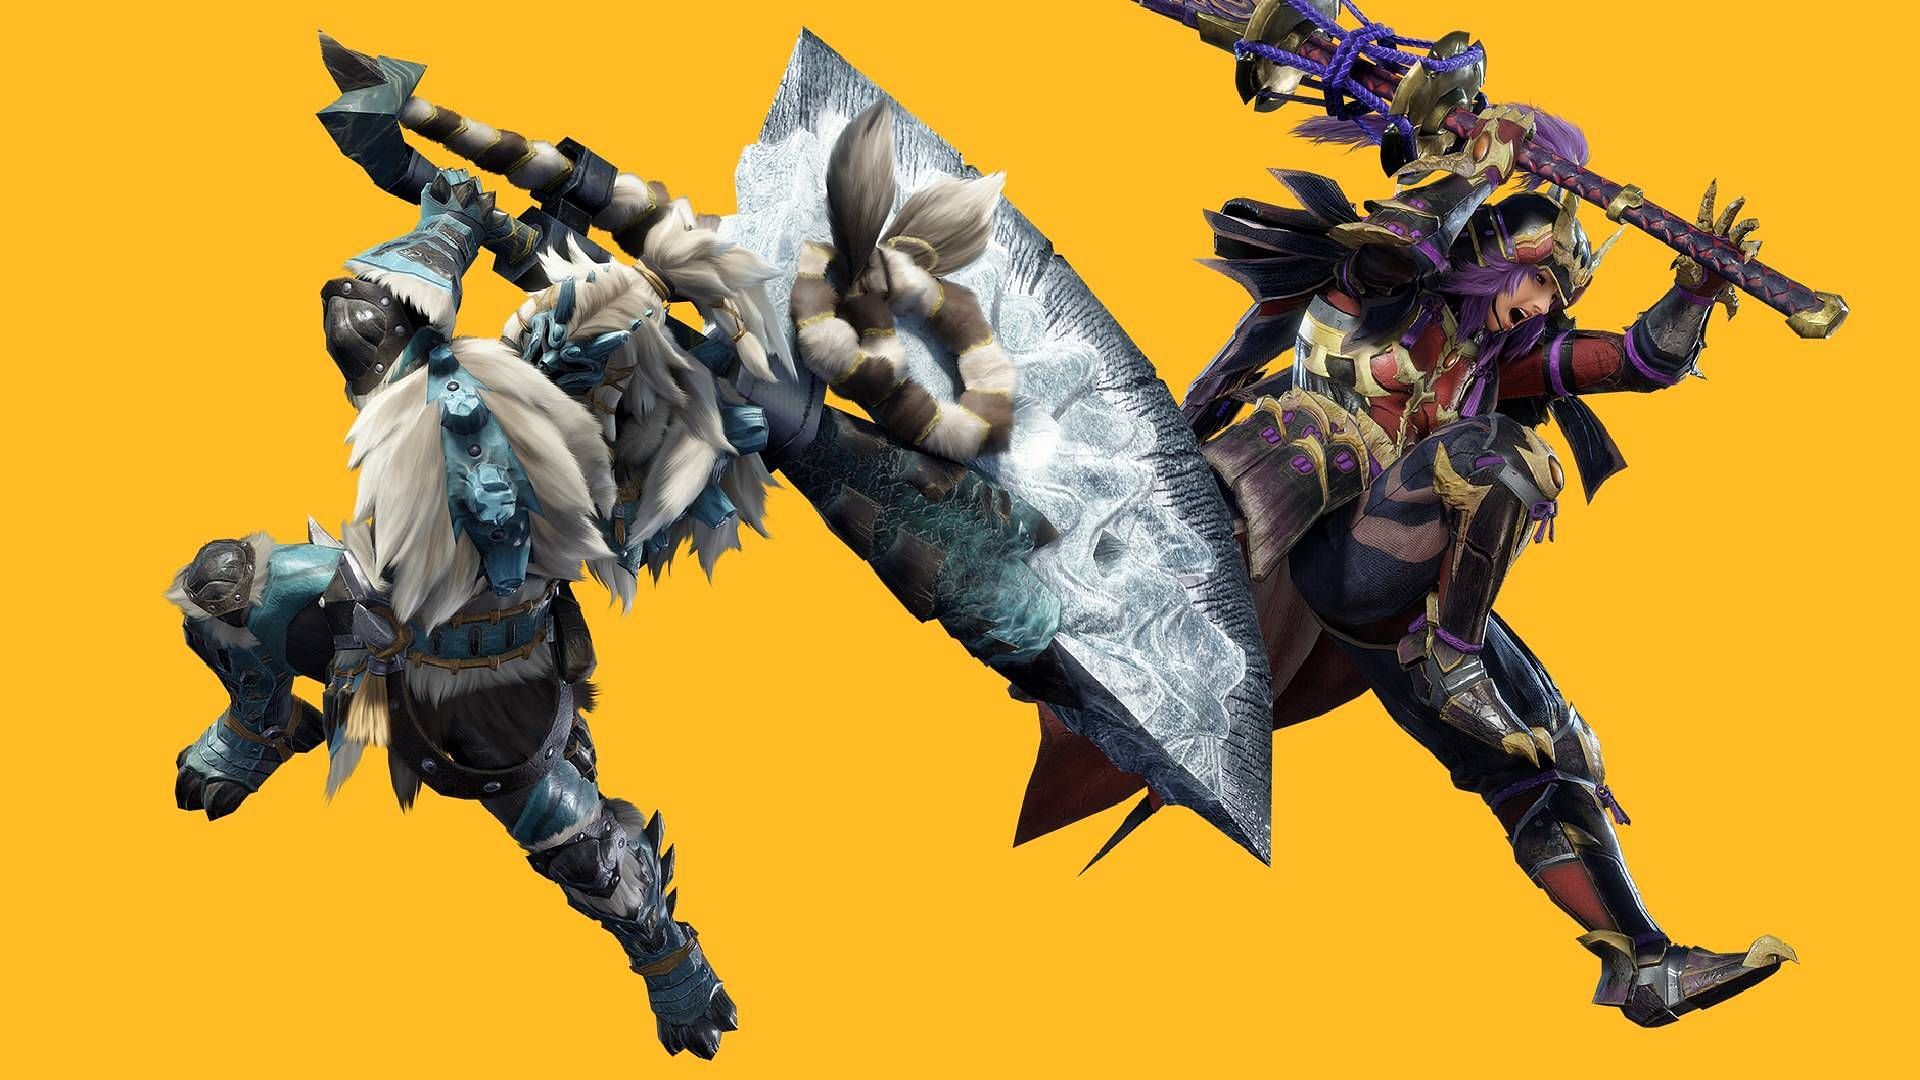 Diablo S Armor (Blade), Monster Hunter Wiki